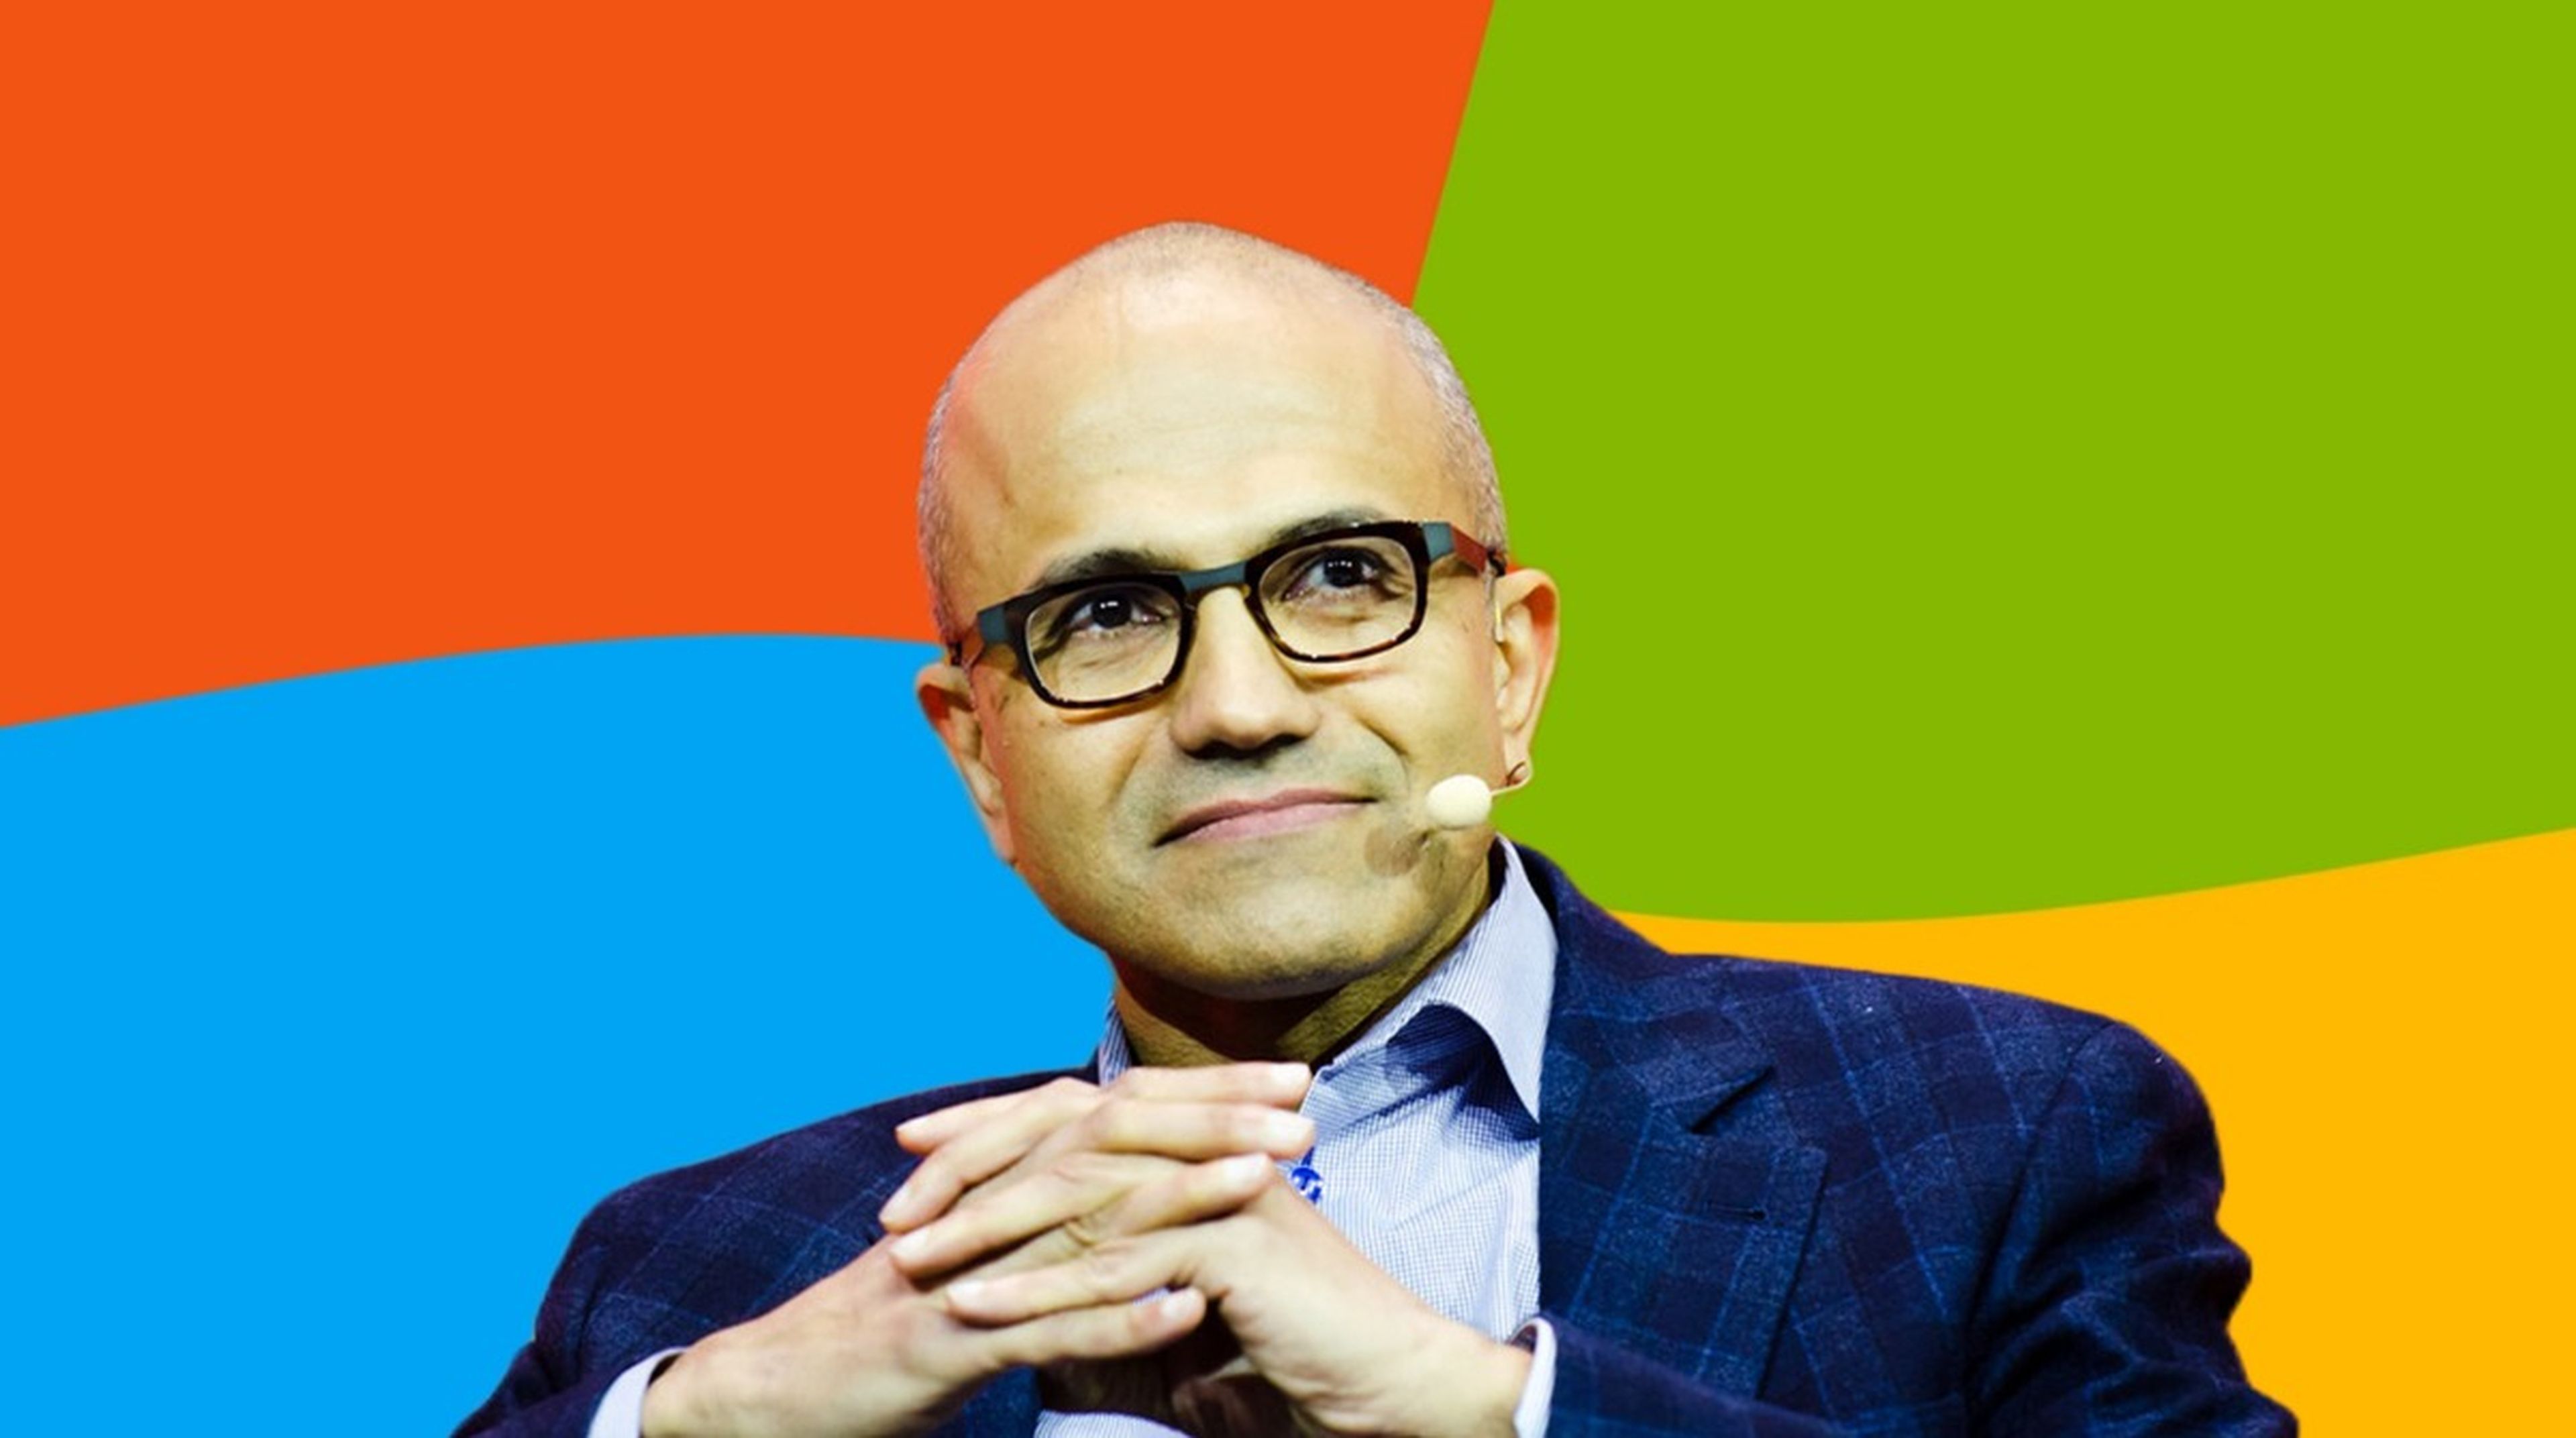 El CEO de Microsoft afirma que Alexa, Siri o Cortana son “tontos como una roca”